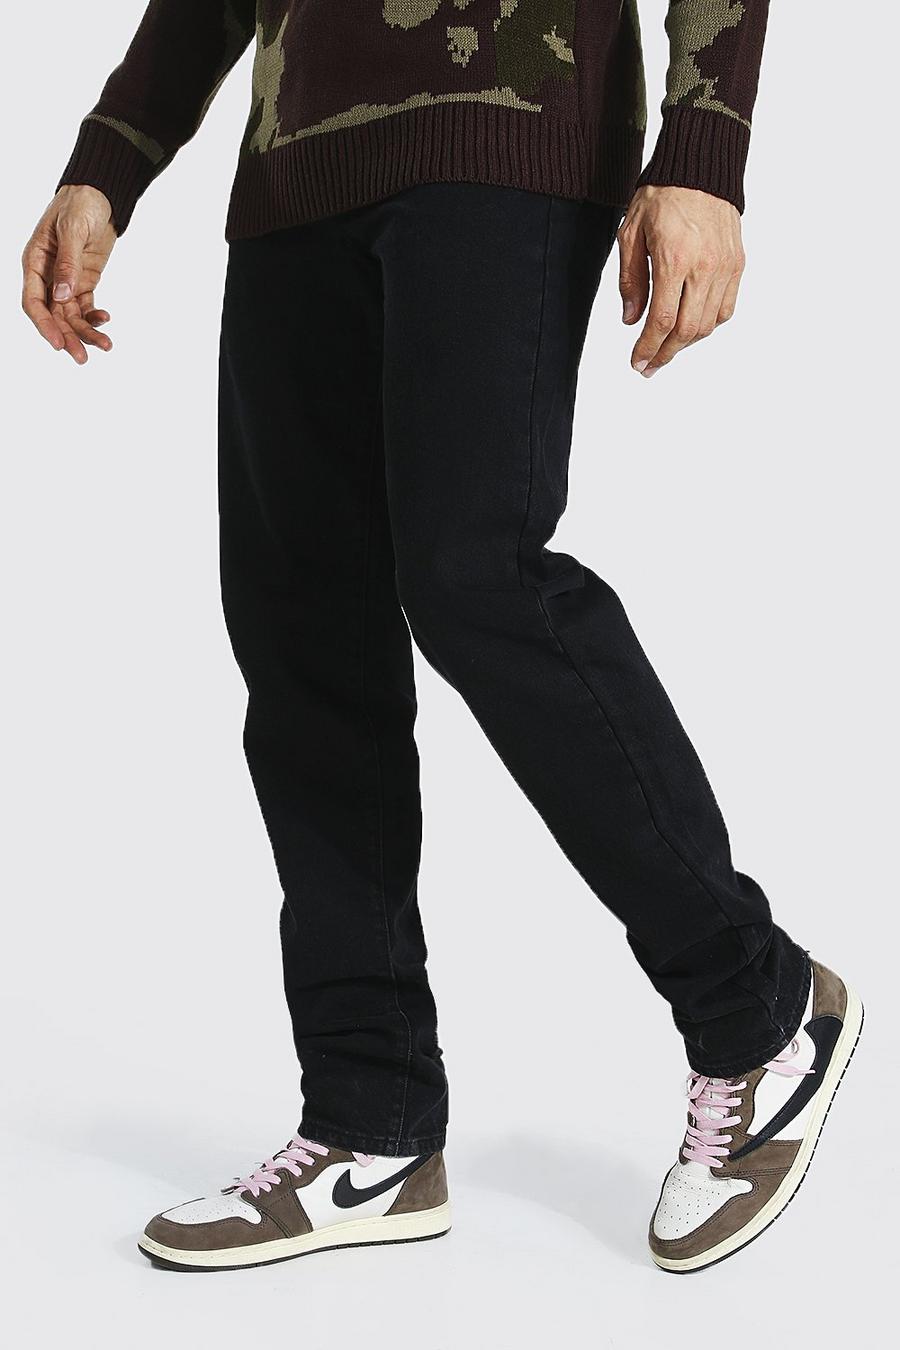 שחור דהוי ג'ינס בגזרה ישרה לנשים גבוהות image number 1